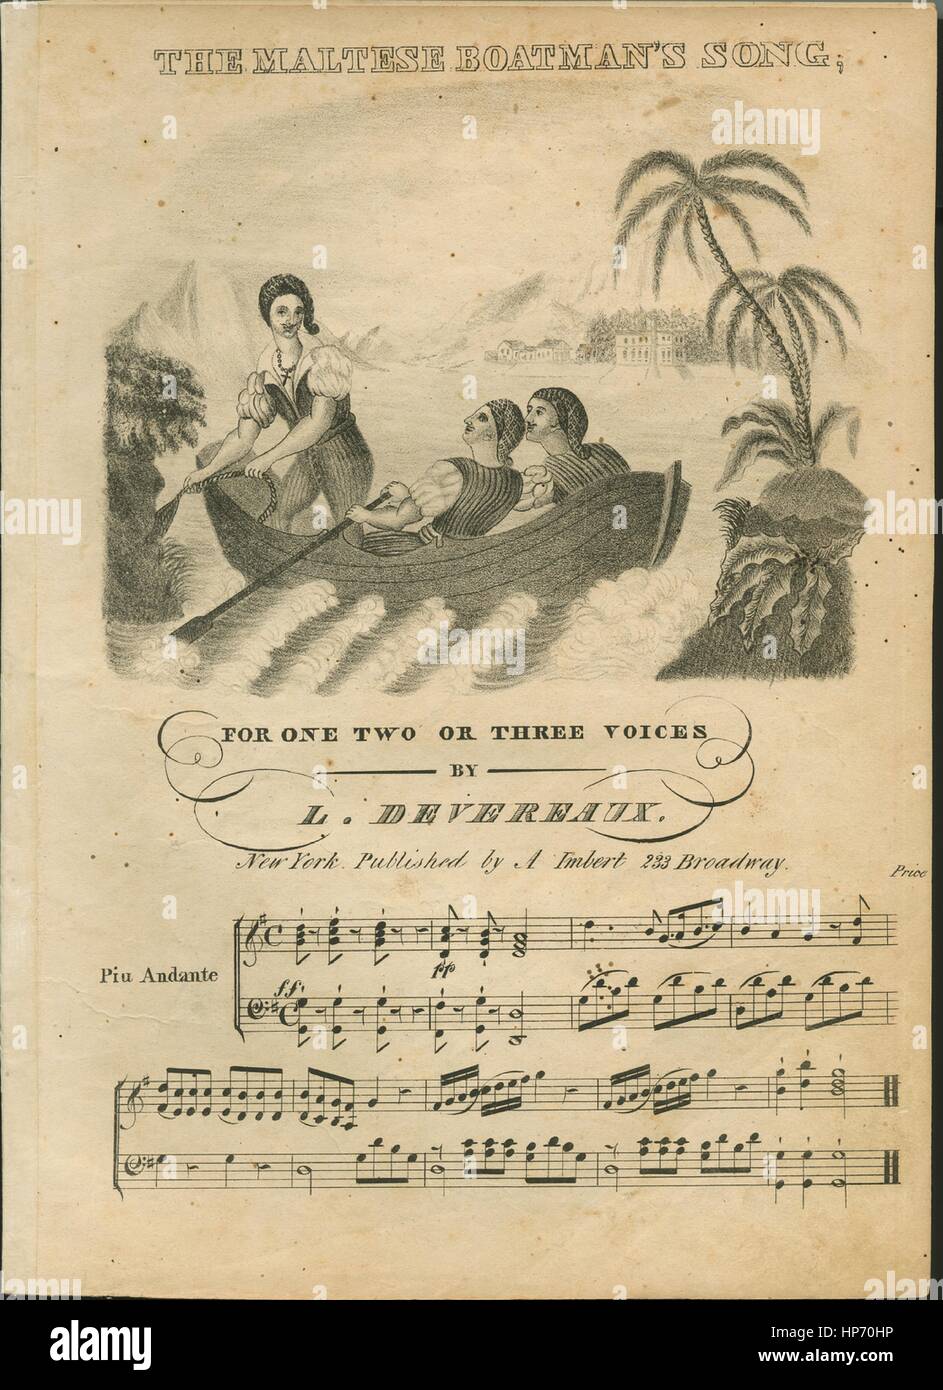 Foglio di musica immagine copertina della canzone "Il barcaiolo Maltese di  canzone, disposti per uno, due o tre voci', con paternitã originale lettura  delle note " con un accompagnamento per il Piano